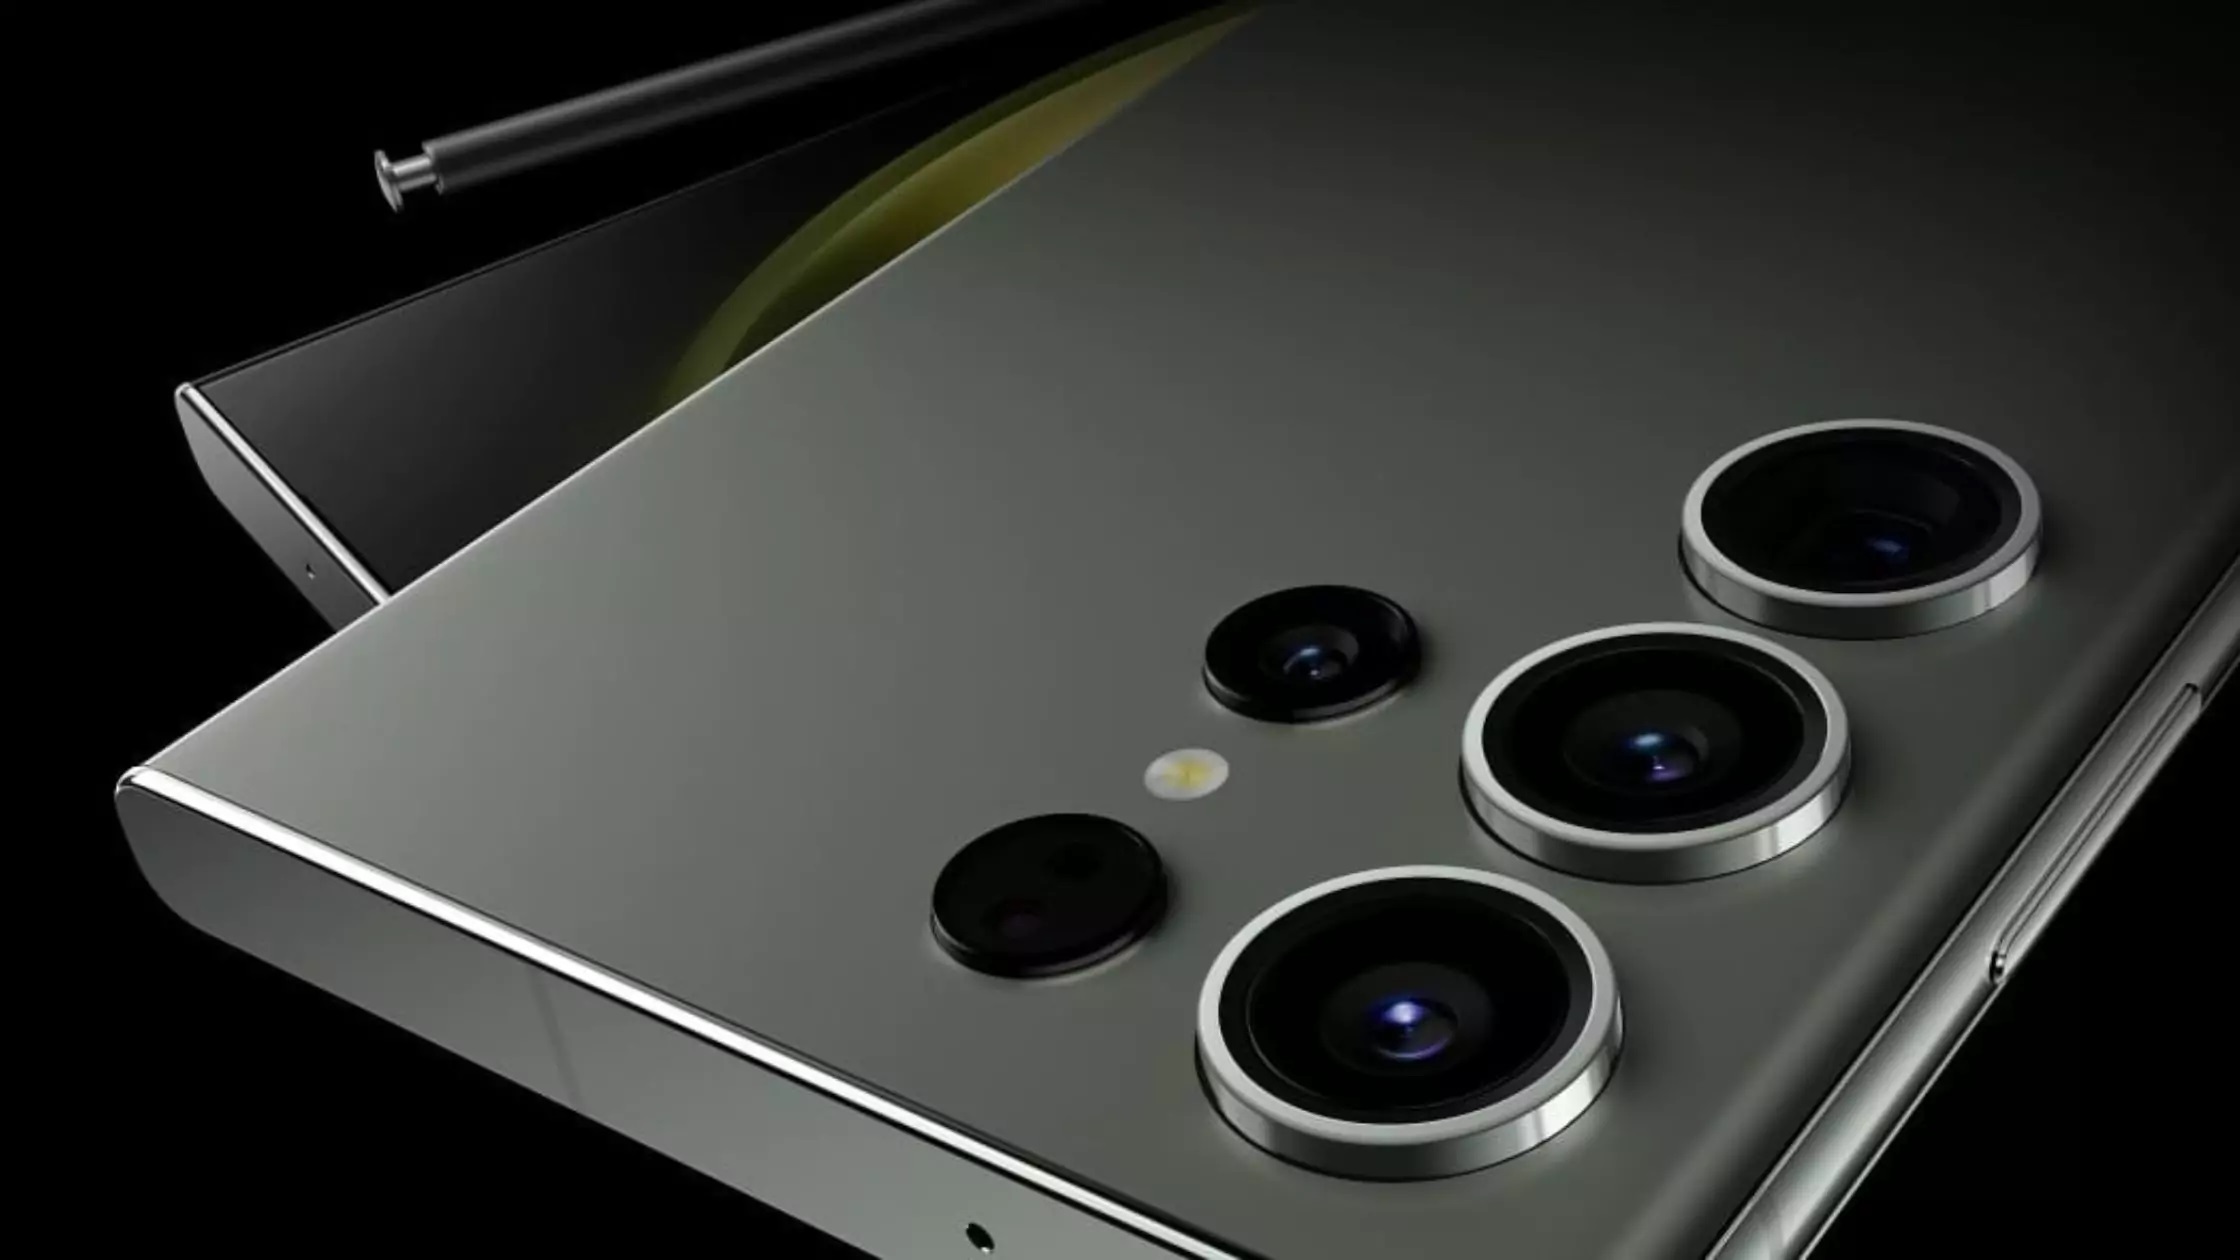 Närmast verkligheten: en insider har avslöjat renderingar av Samsung Galaxy S24 Ultra med titanramar som iPhone 15 Pro